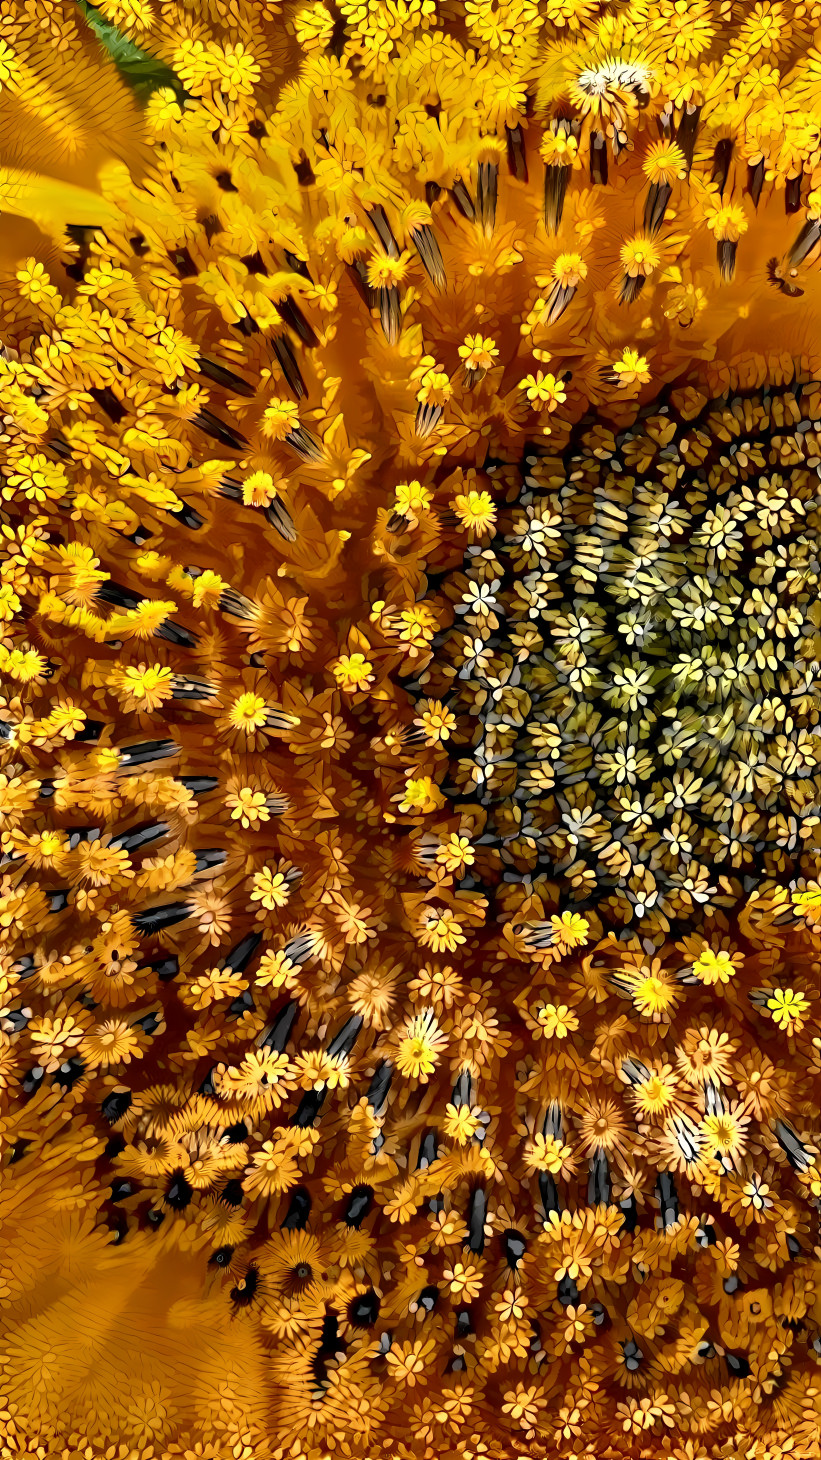 sunflower's deeper inside